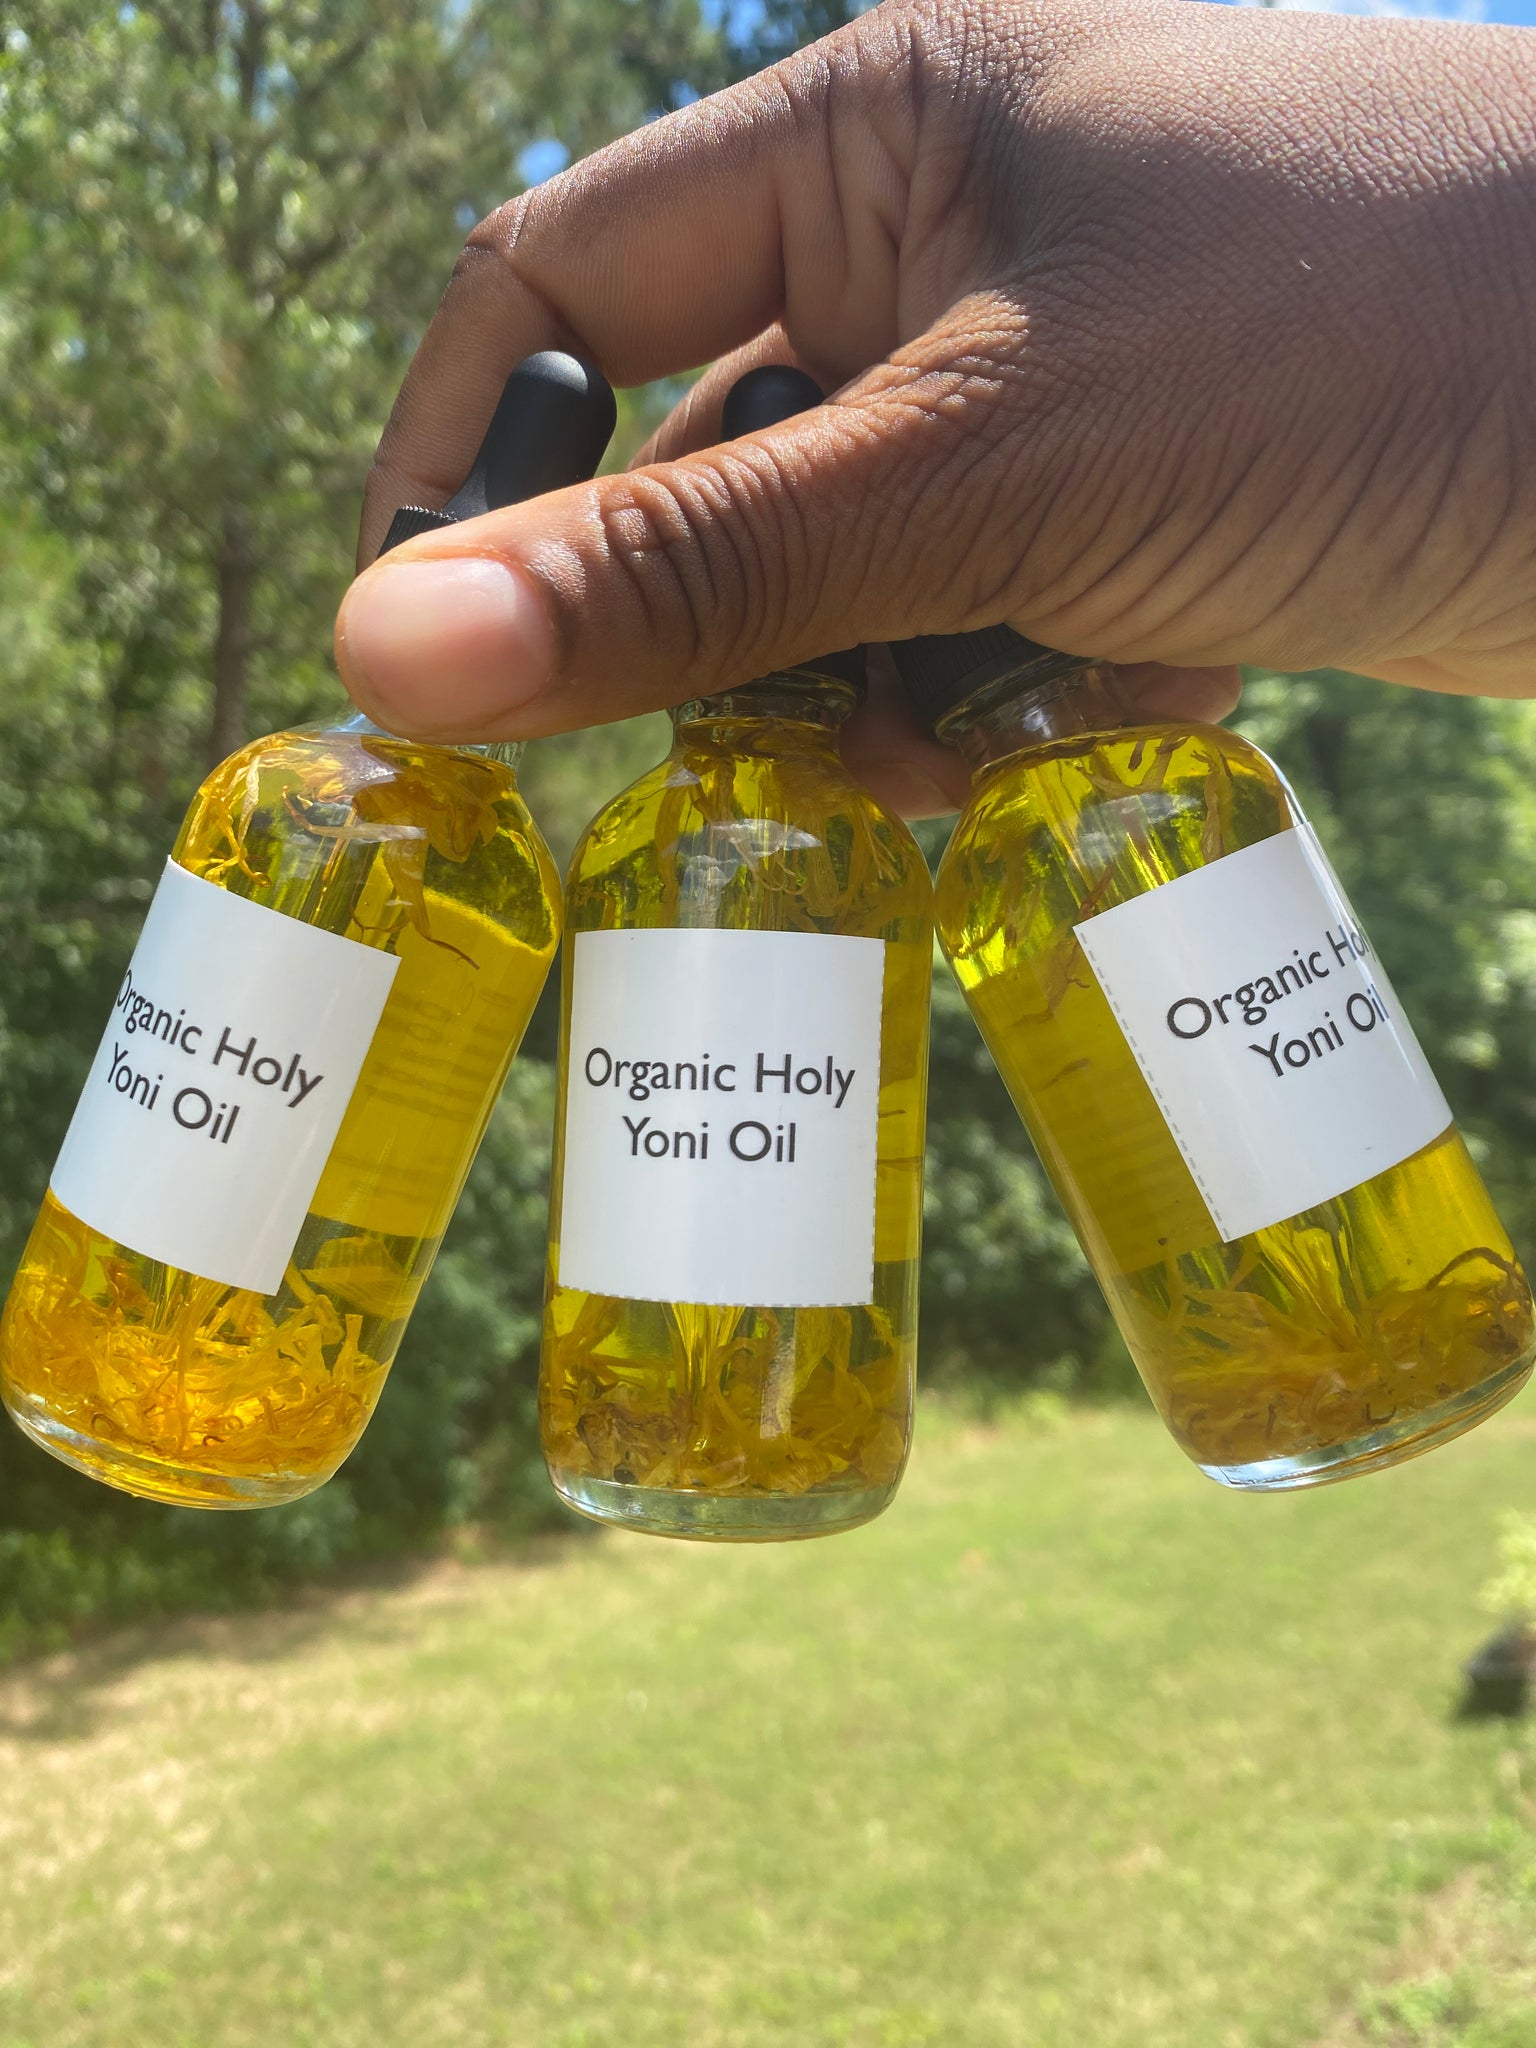 Organic Holy Yoni Oil